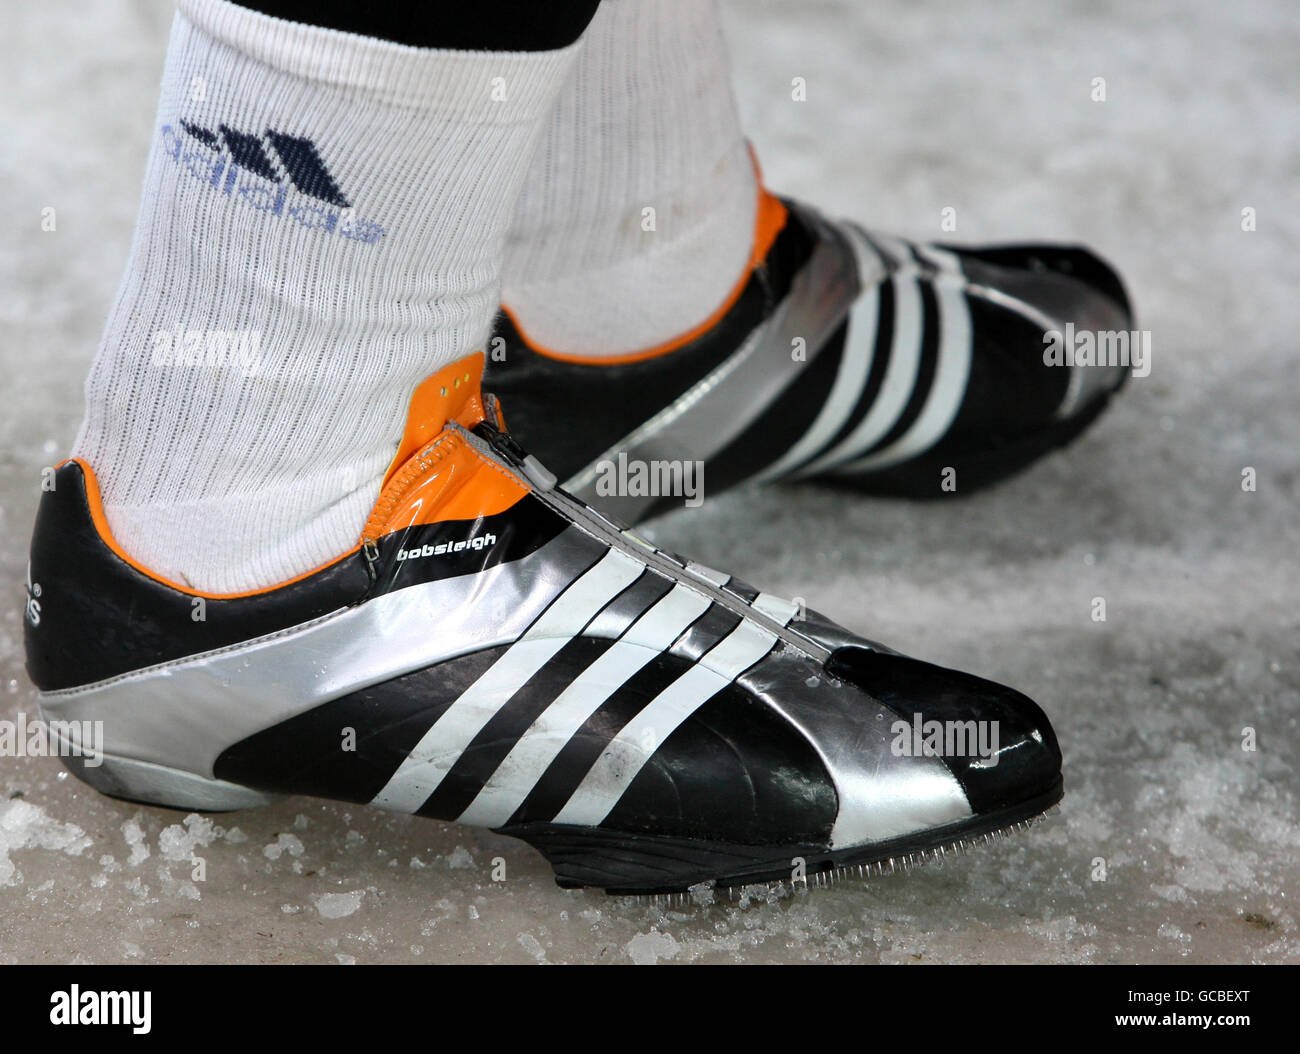 El calzado de un Boblseigher durante una carrera entrenamiento en la pista de Bobsleigh en los Juegos Olímpicos de 2010 en el Whistler Sliding Center, Whistler, Canadá Fotografía stock - Alamy